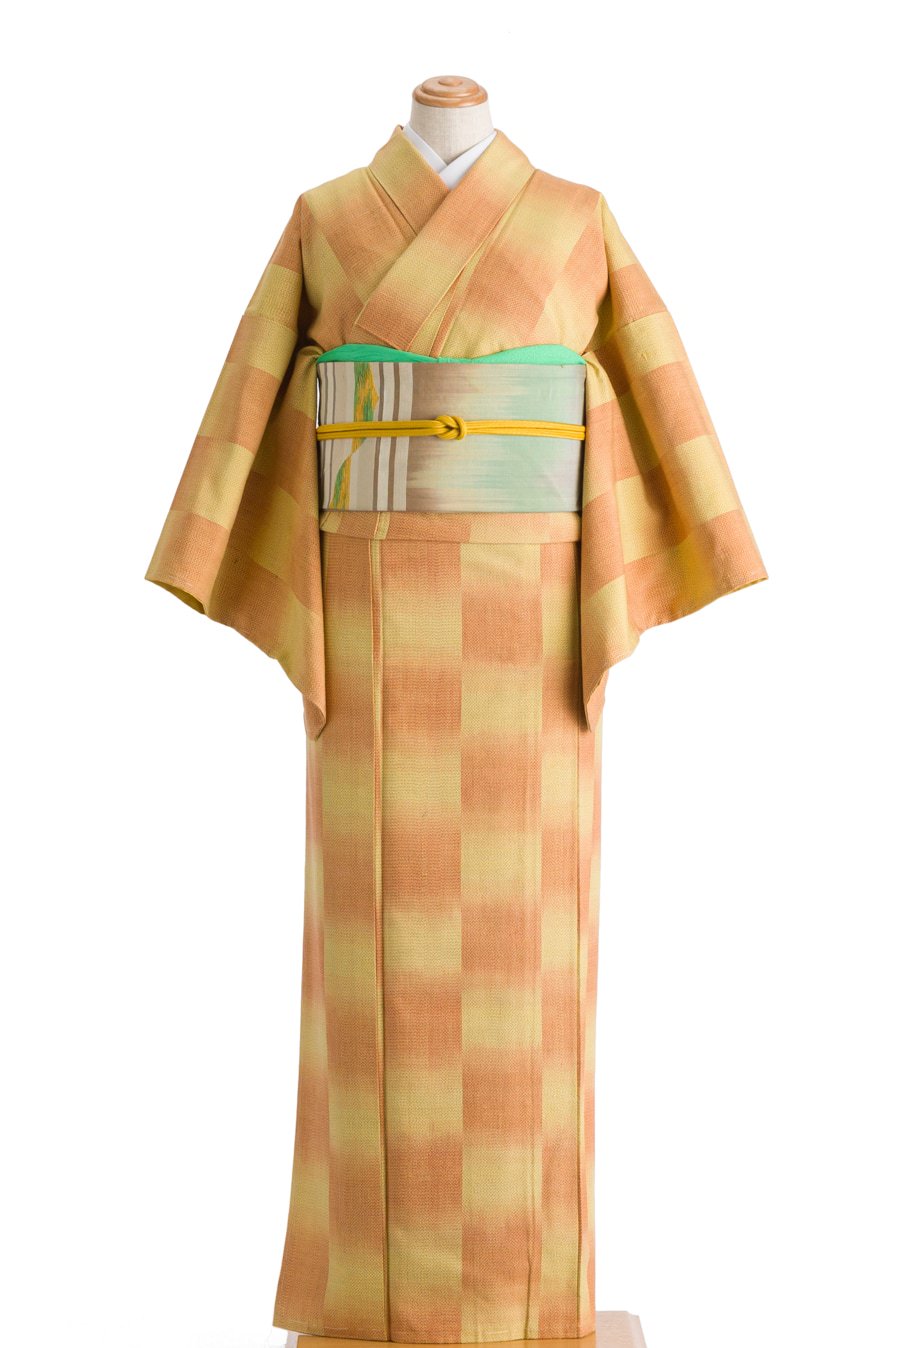 紬 黄色とオレンジの市松 - からん::アンティーク着物・リサイクル着物